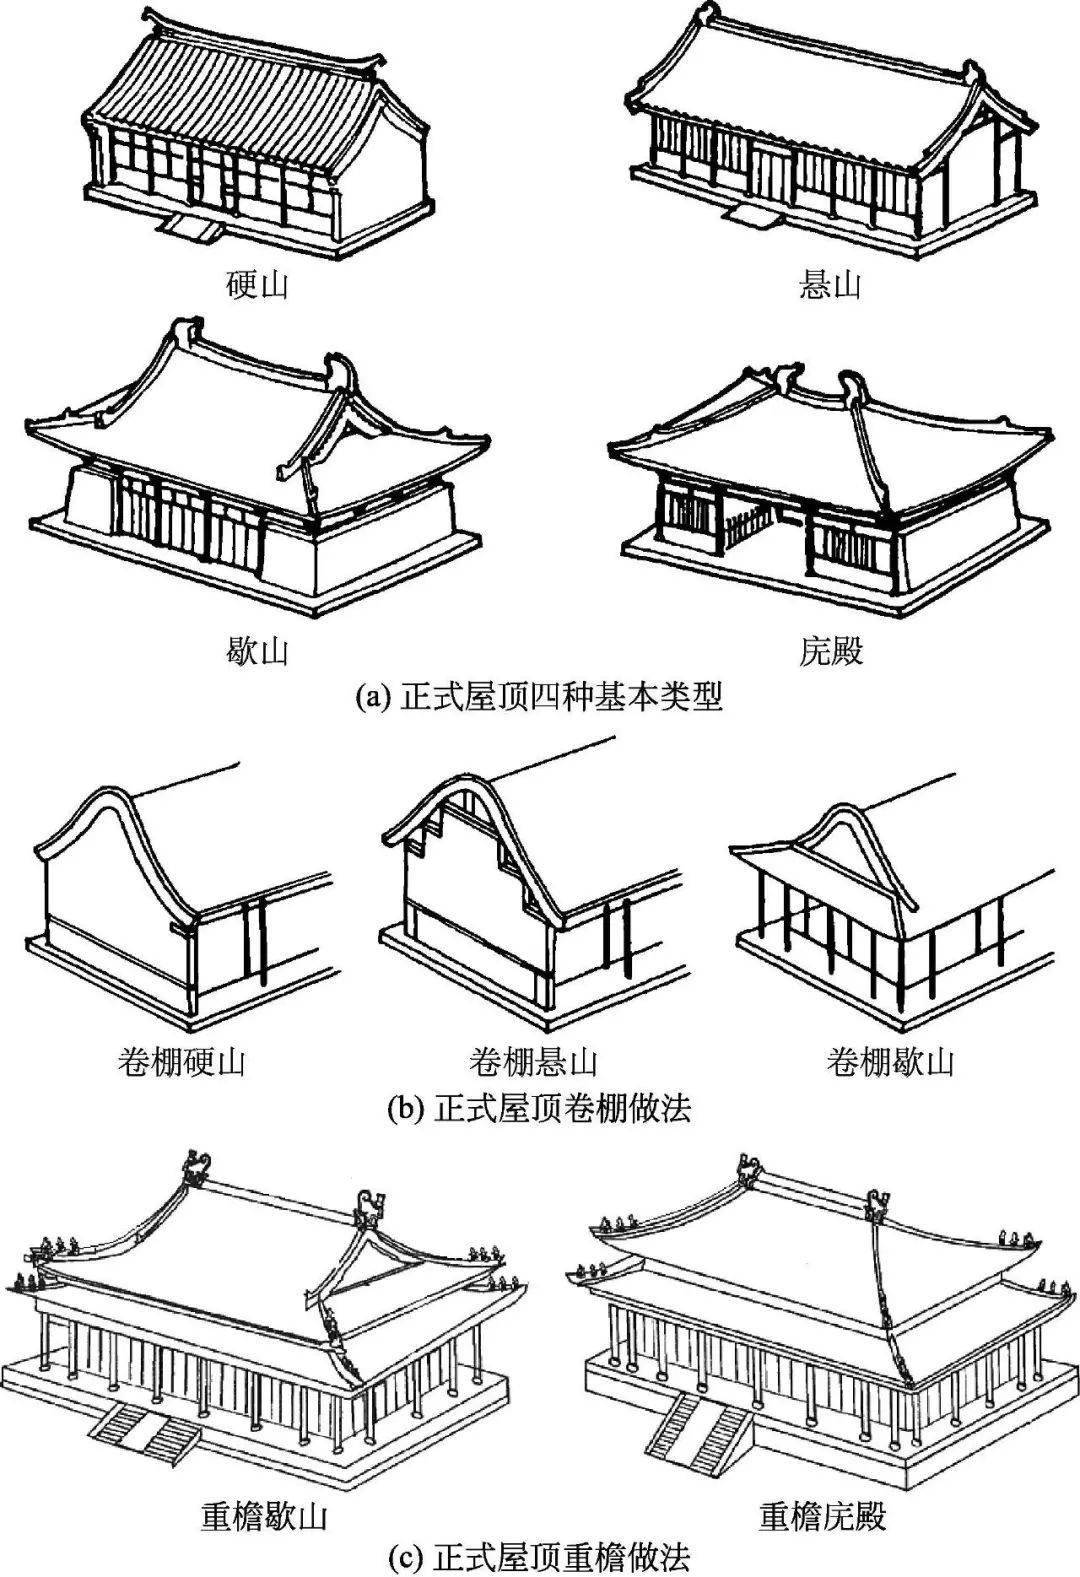 硬山,悬山,庑殿,歇山是正式建筑屋顶的四种基本型